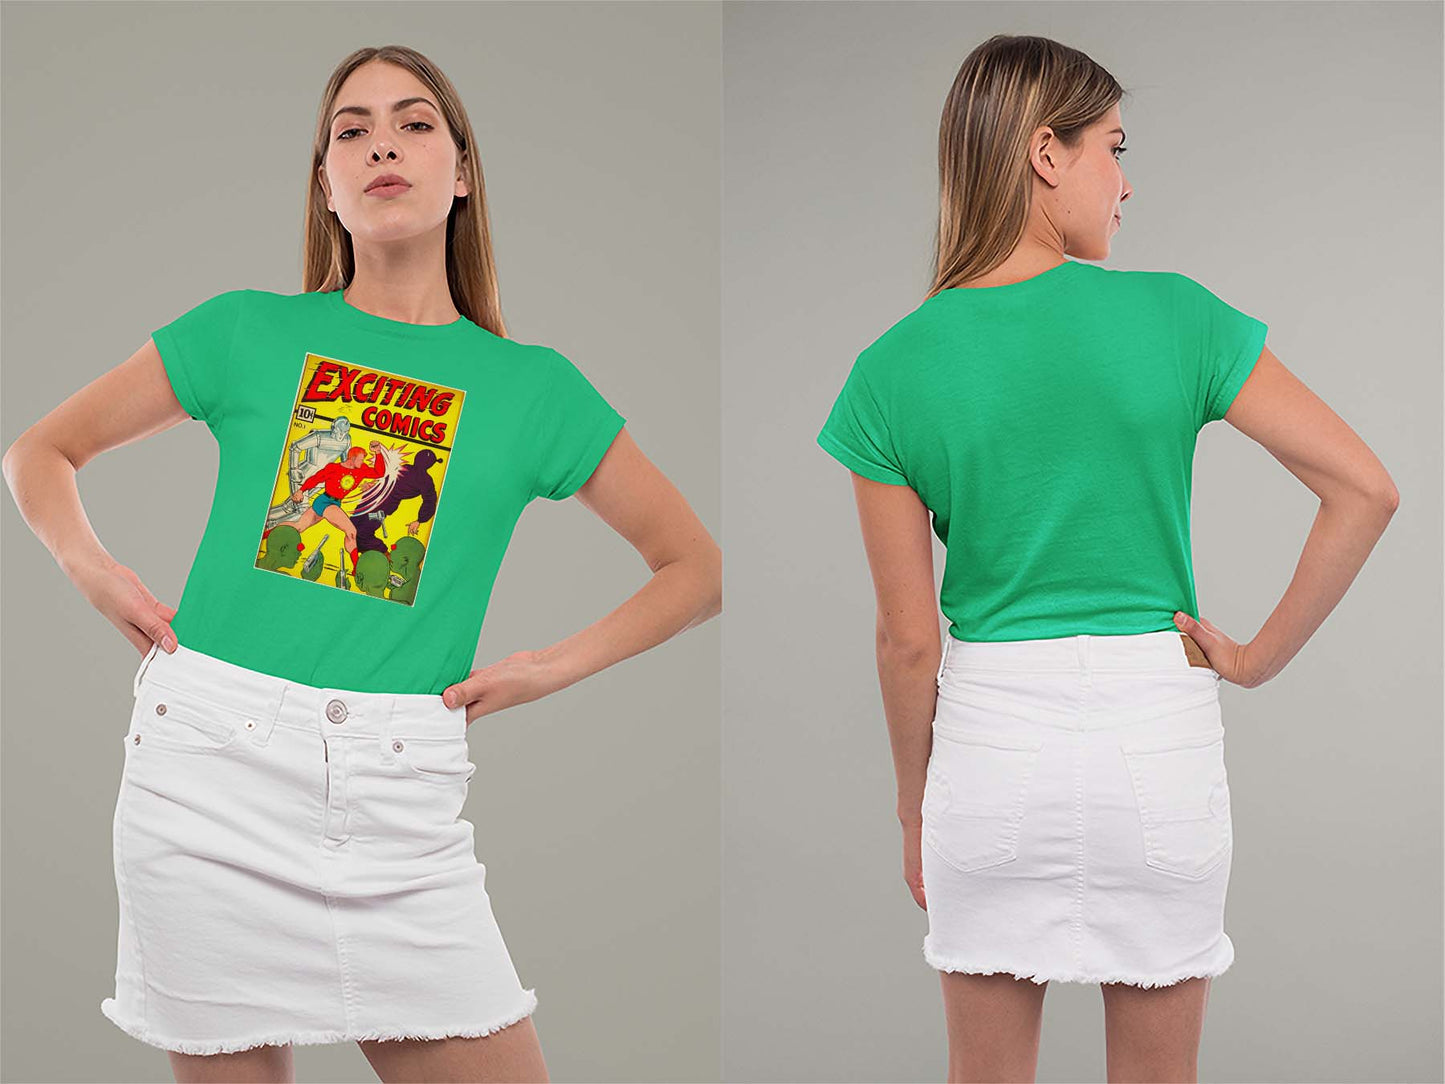 Exciting Comics No.1 Ladies Crew (Round) Neck Shirt Small Irish Green